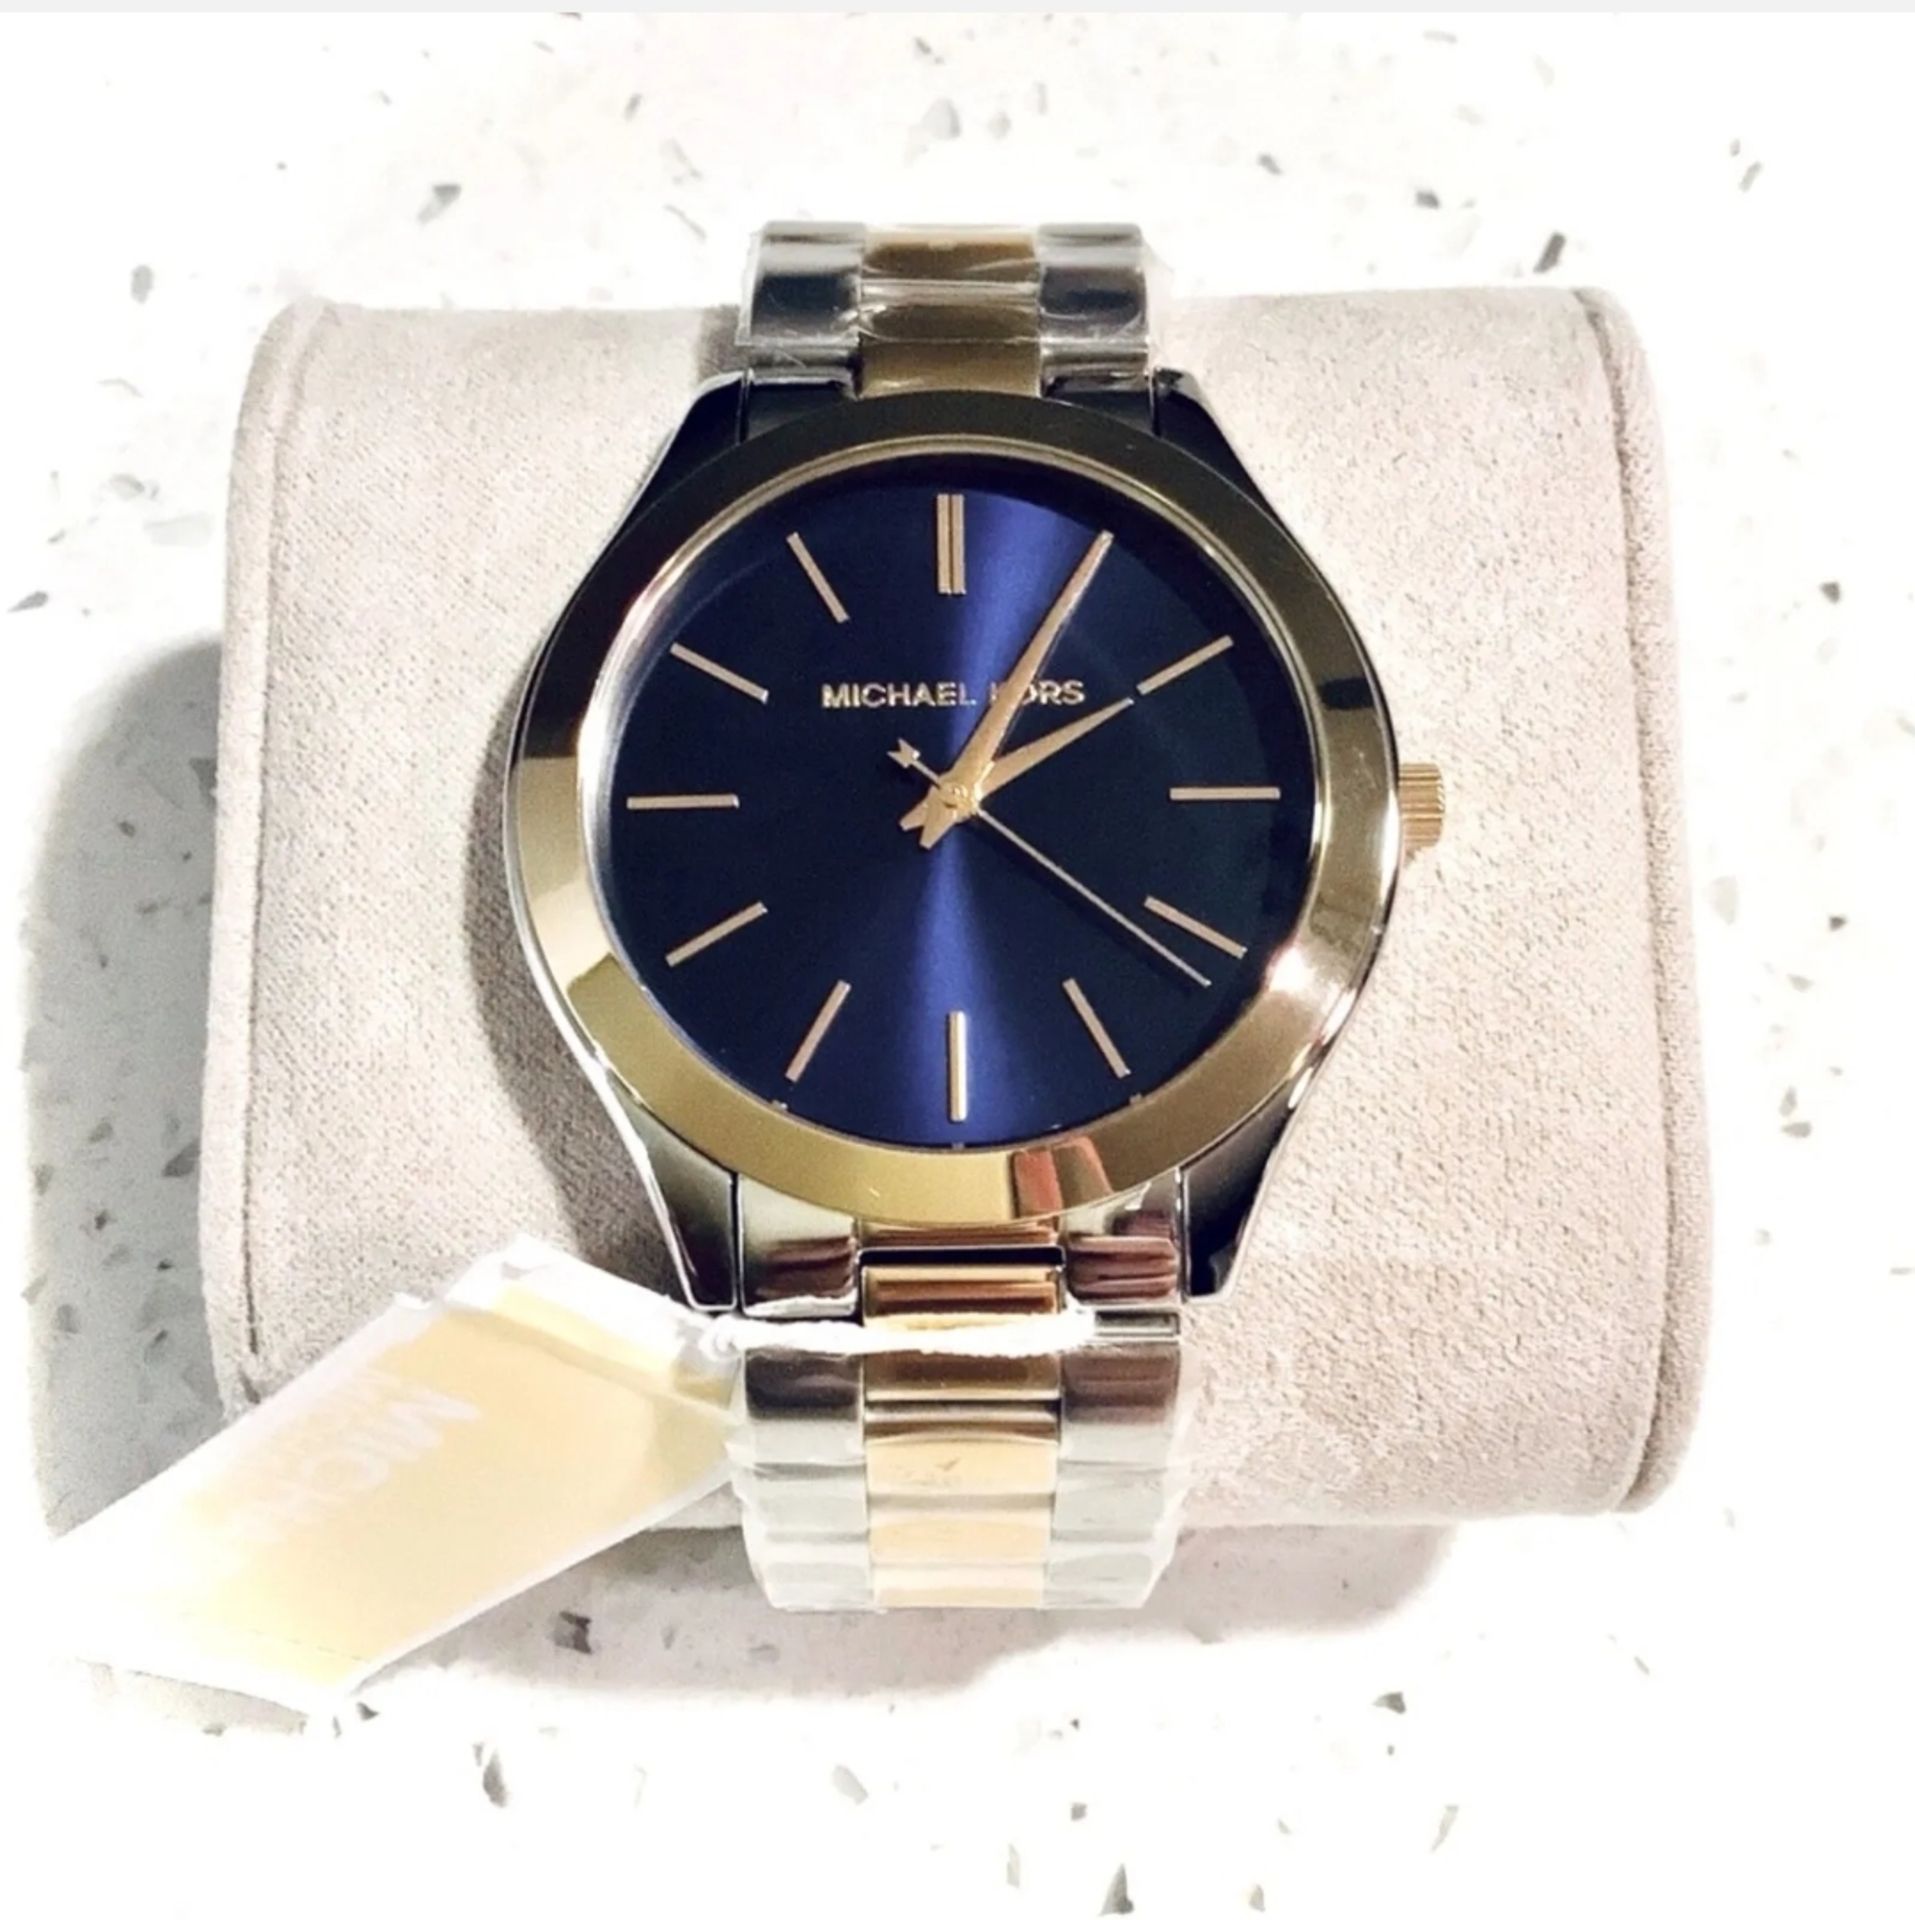 Michael Kors MK3479 Ladies Slim Runway Watch Two Tone Stainless Steel Blue Dial Quartz Watch - Image 5 of 7